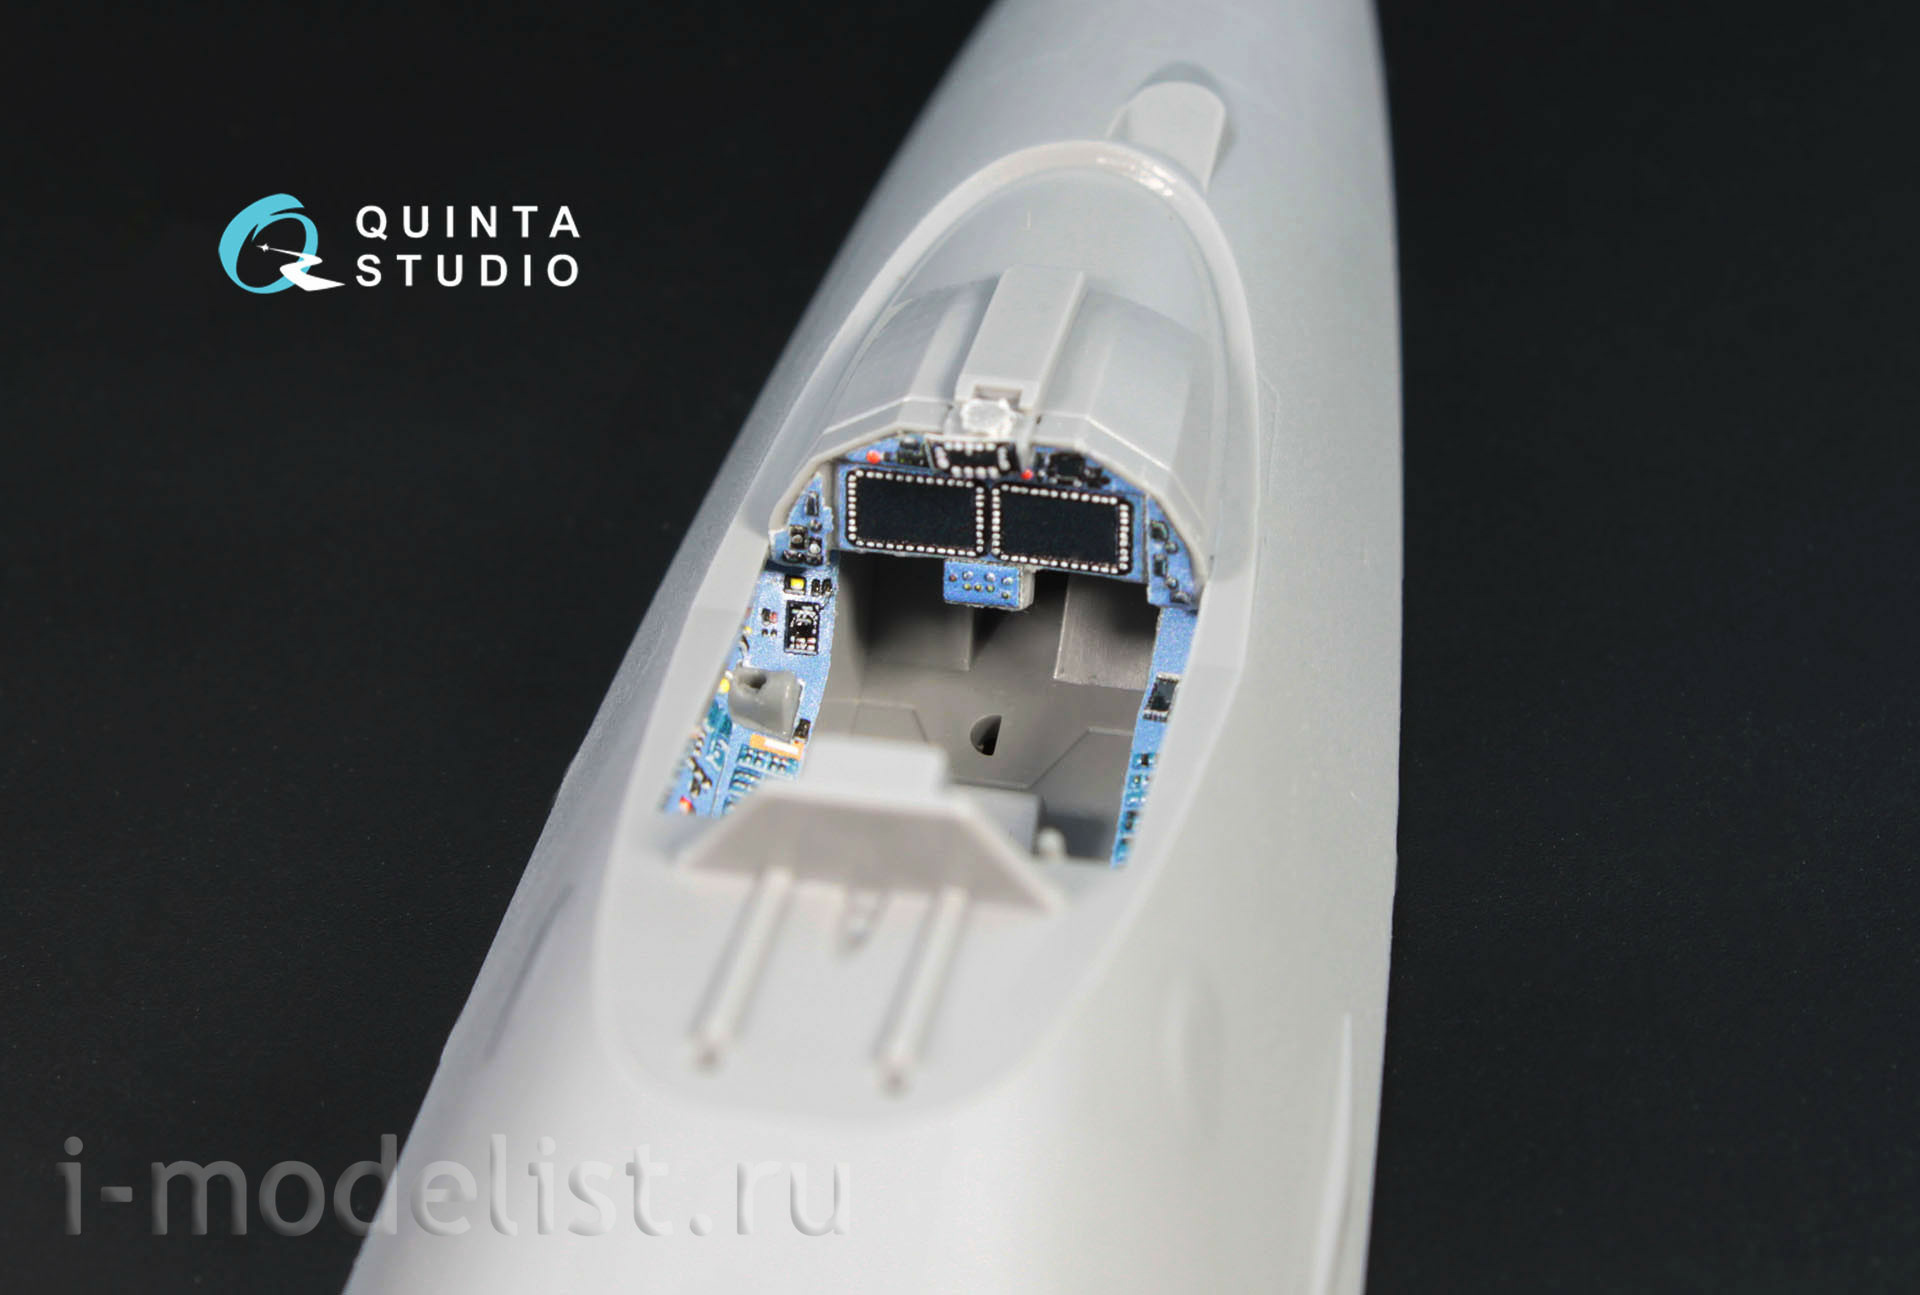 QD72004 Quinta Studio 1/72 3D Декаль интерьера кабины Суххой-57 (для модели Звезда 7319)